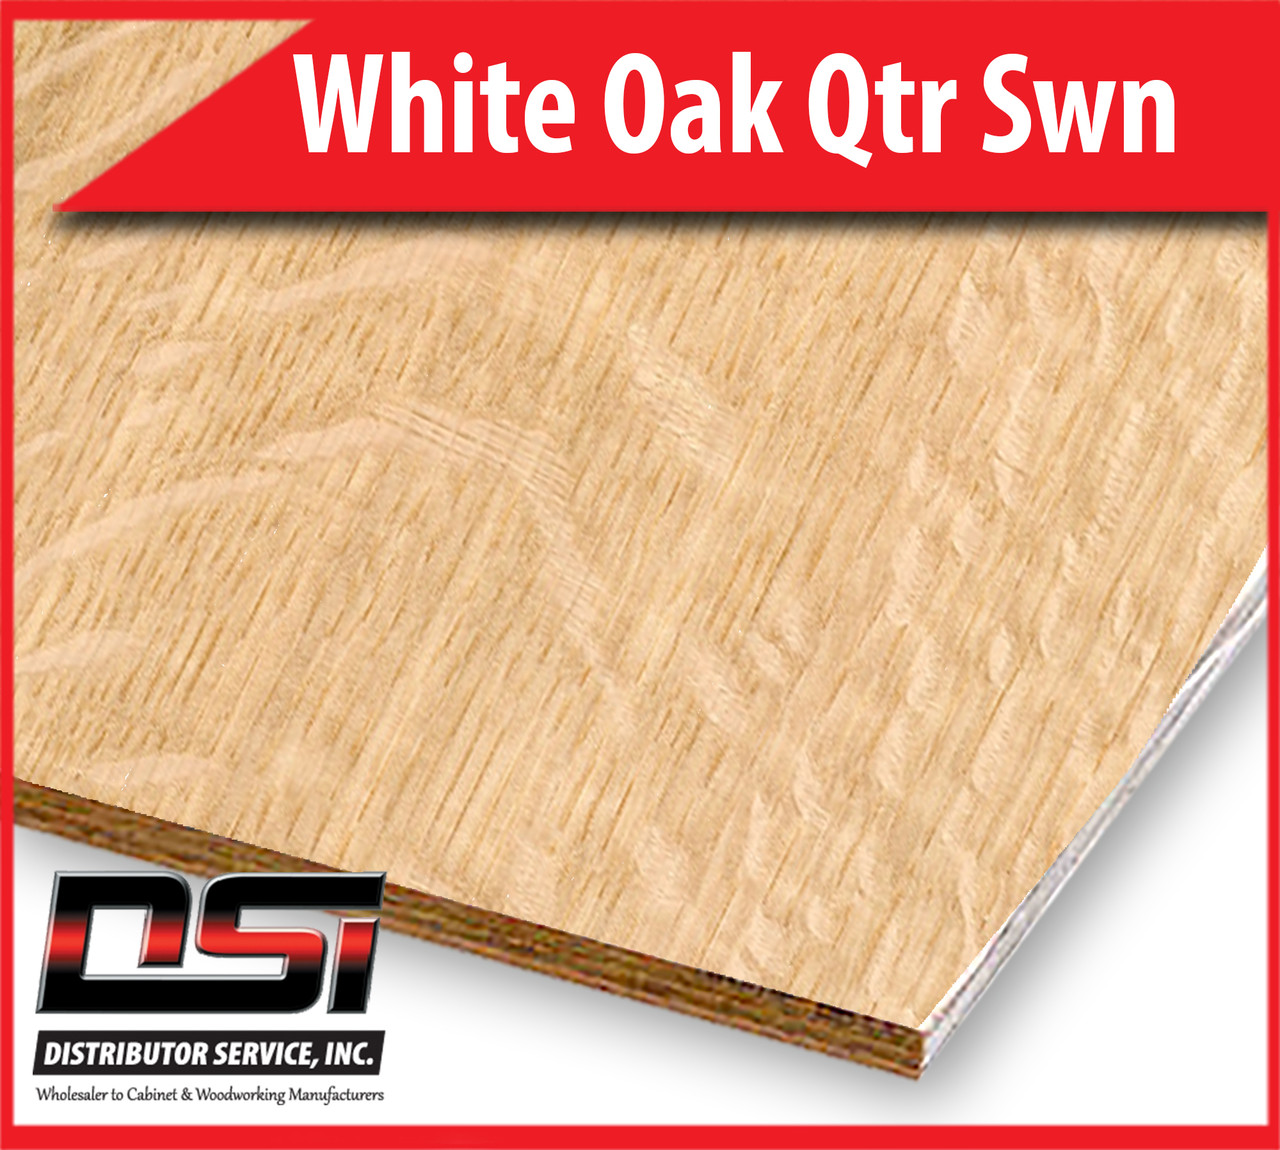 White Oak Plywood Qtr Swn VC A1 Rift Back 3/4" x 4x8